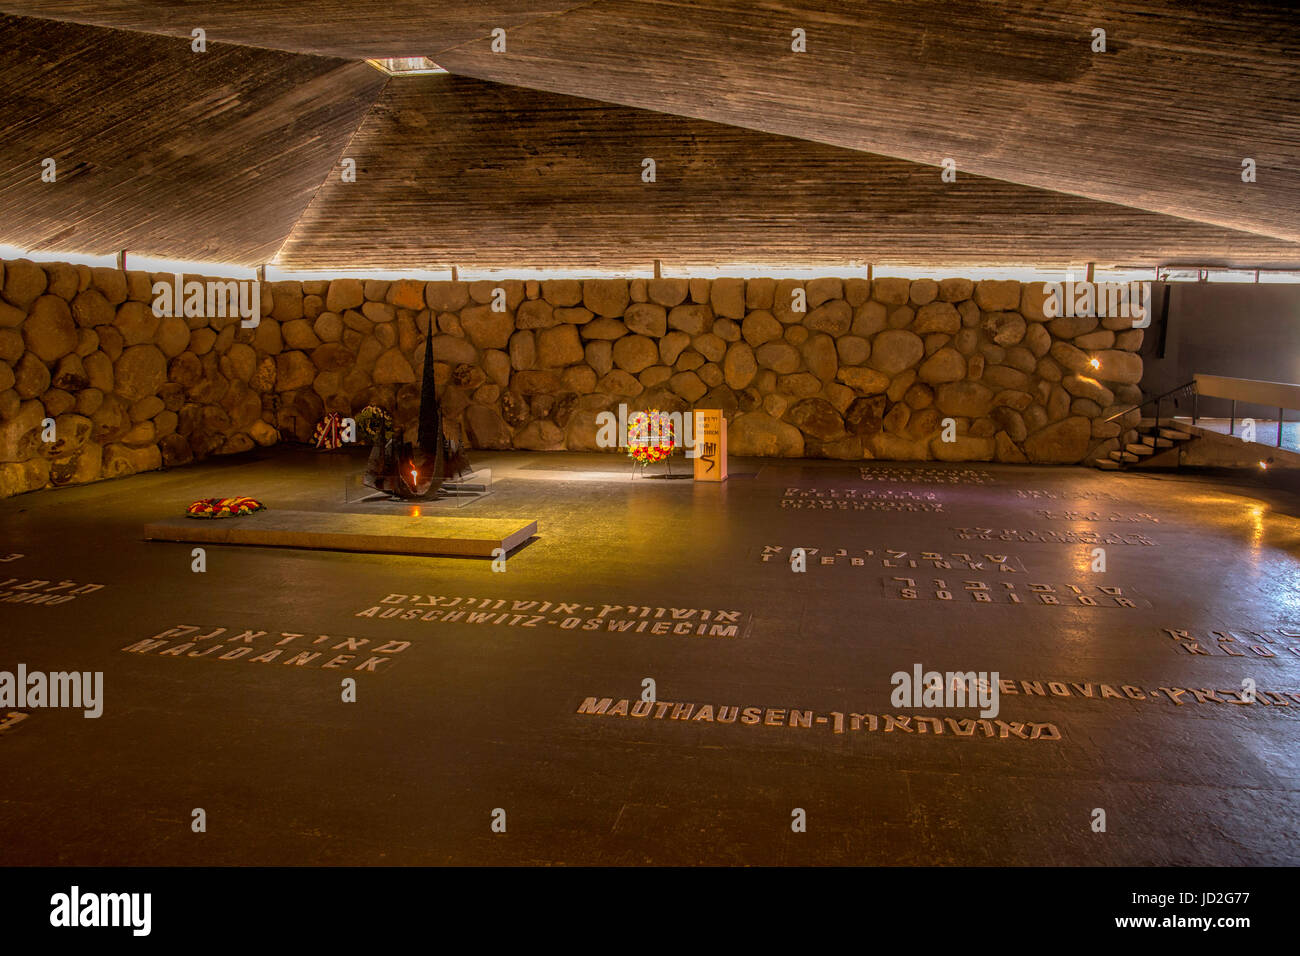 Nomi di ebrei nei campi di concentramento nella sala del ricordo nella visita al Mausoleo di Yad Vashem, il memoriale dell'Olocausto, Gerusalemme. Foto Stock